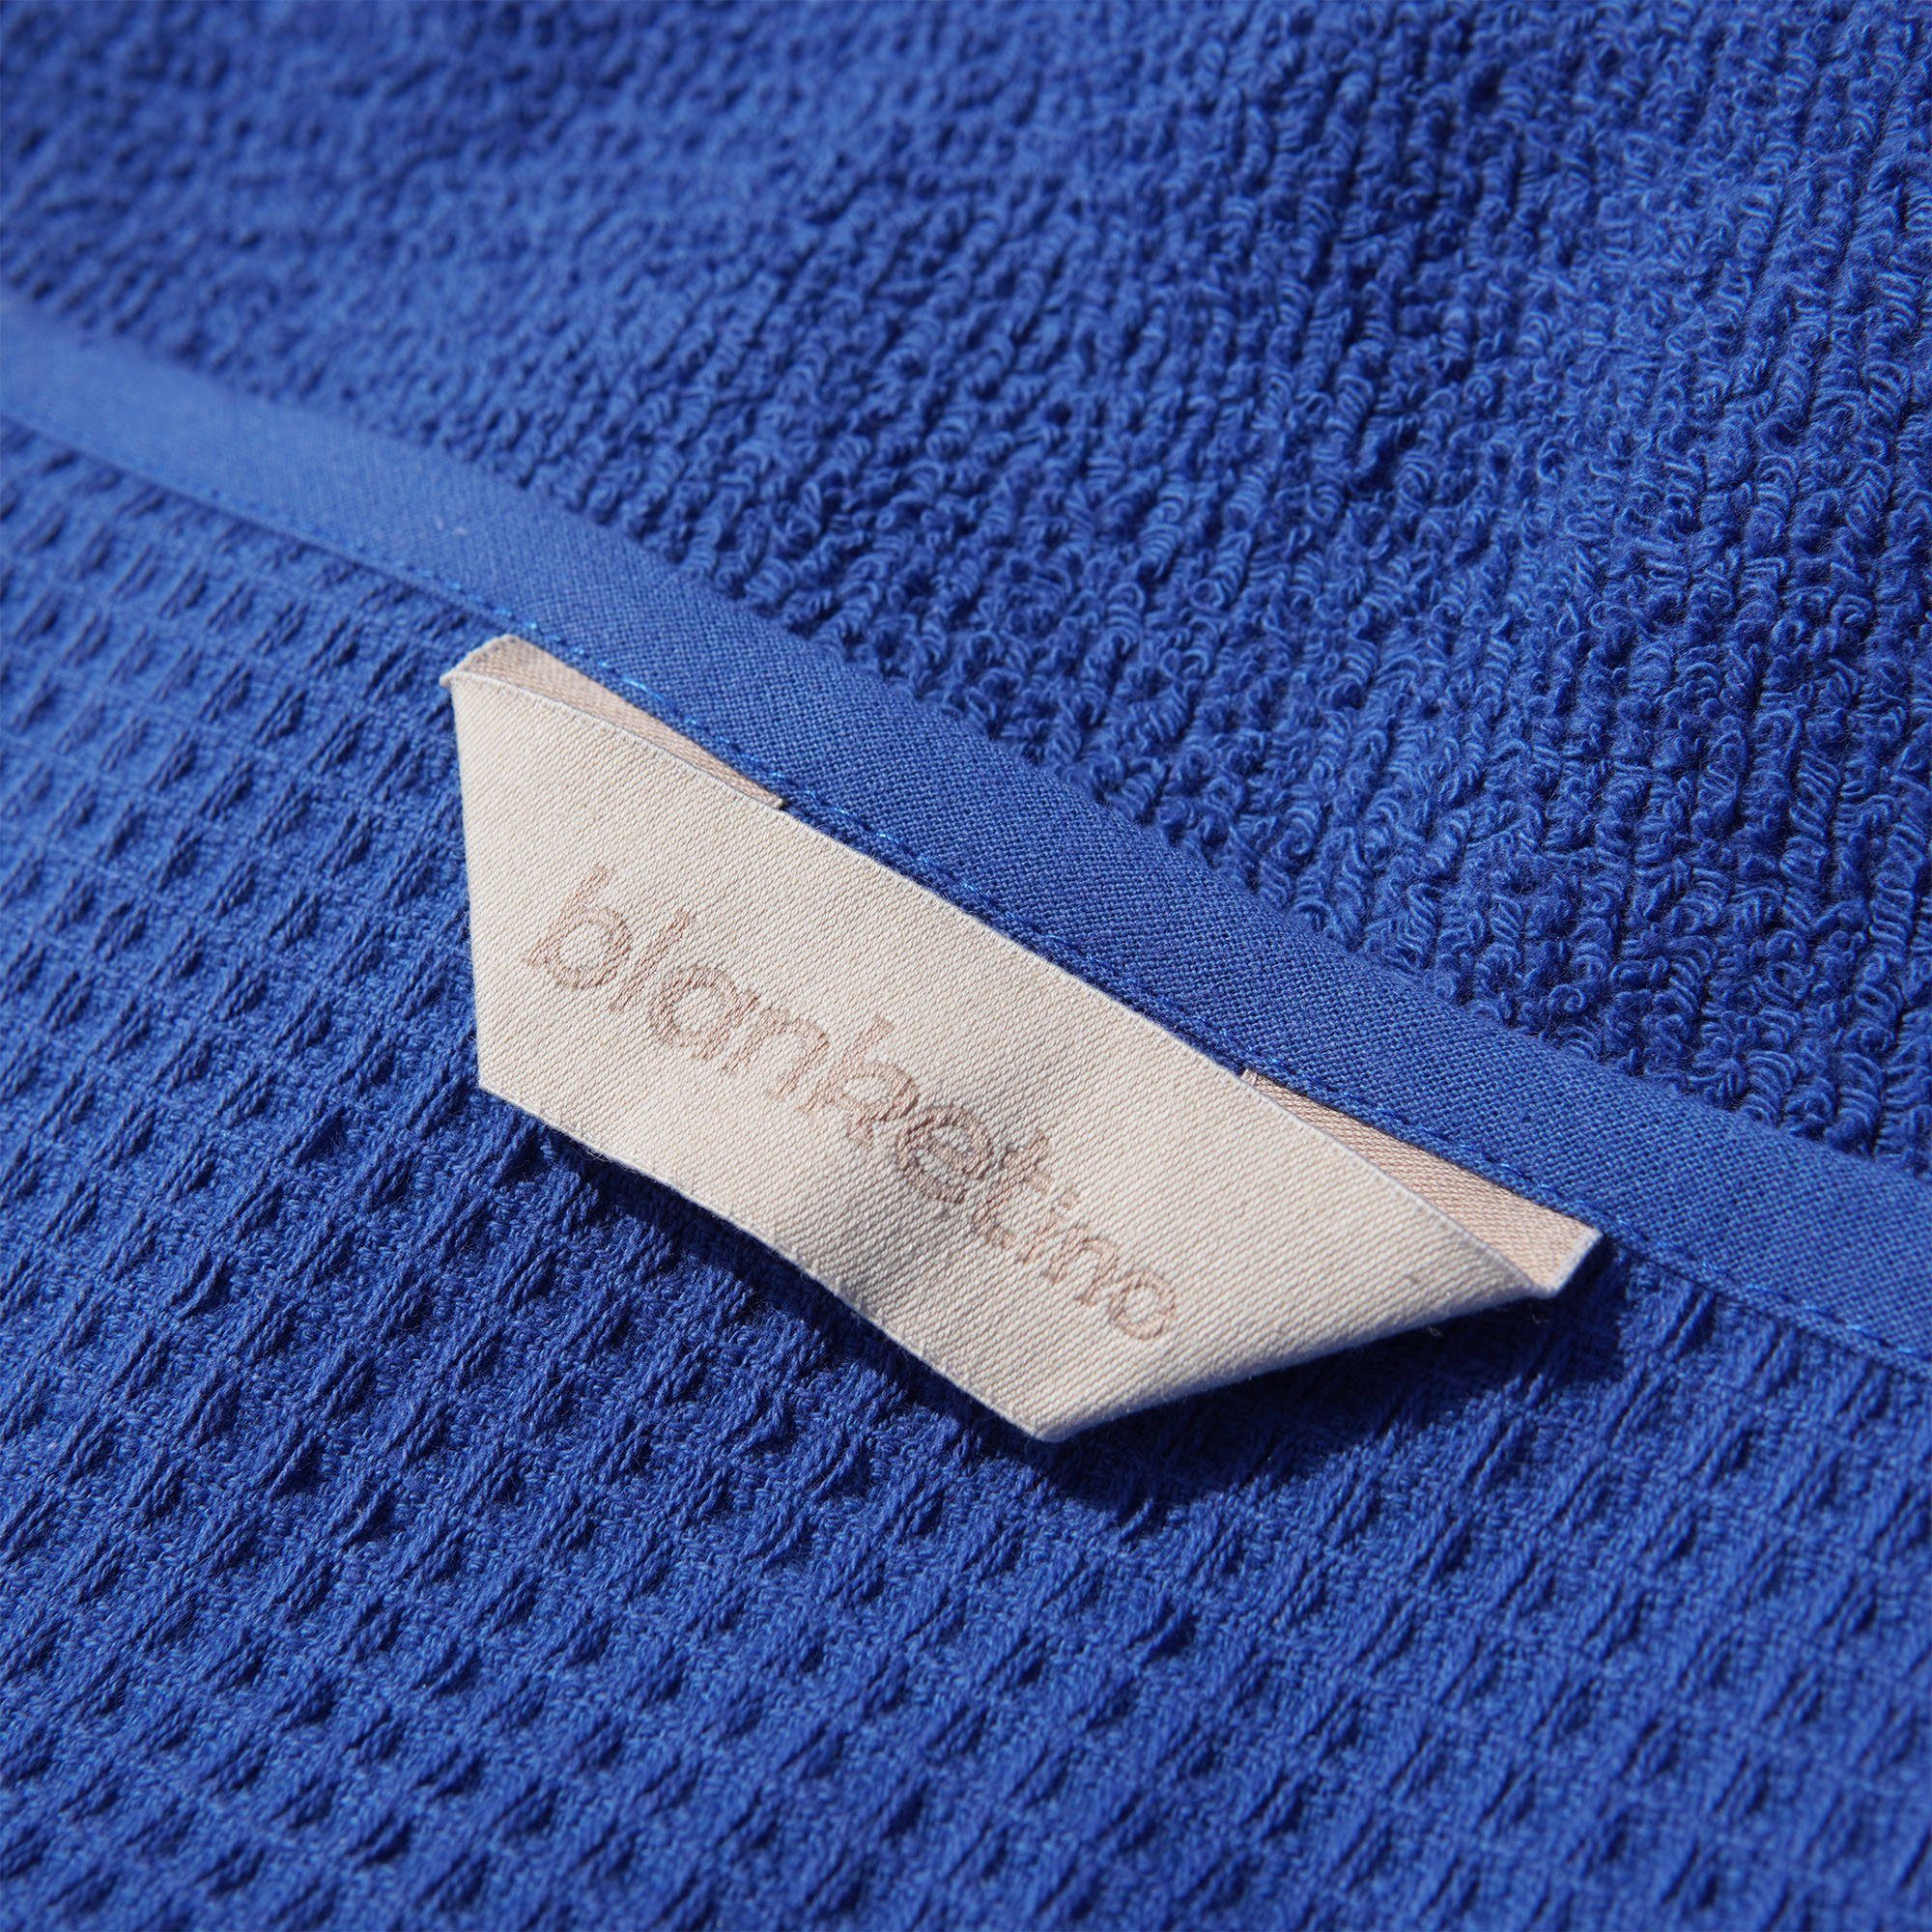 Germany blanketino Made in Schnelltrocknendes Azurblau, 145x210, Handtuch, Badetuch in Strandhandtuch, elegantes Baumwolle, Badetuch XL